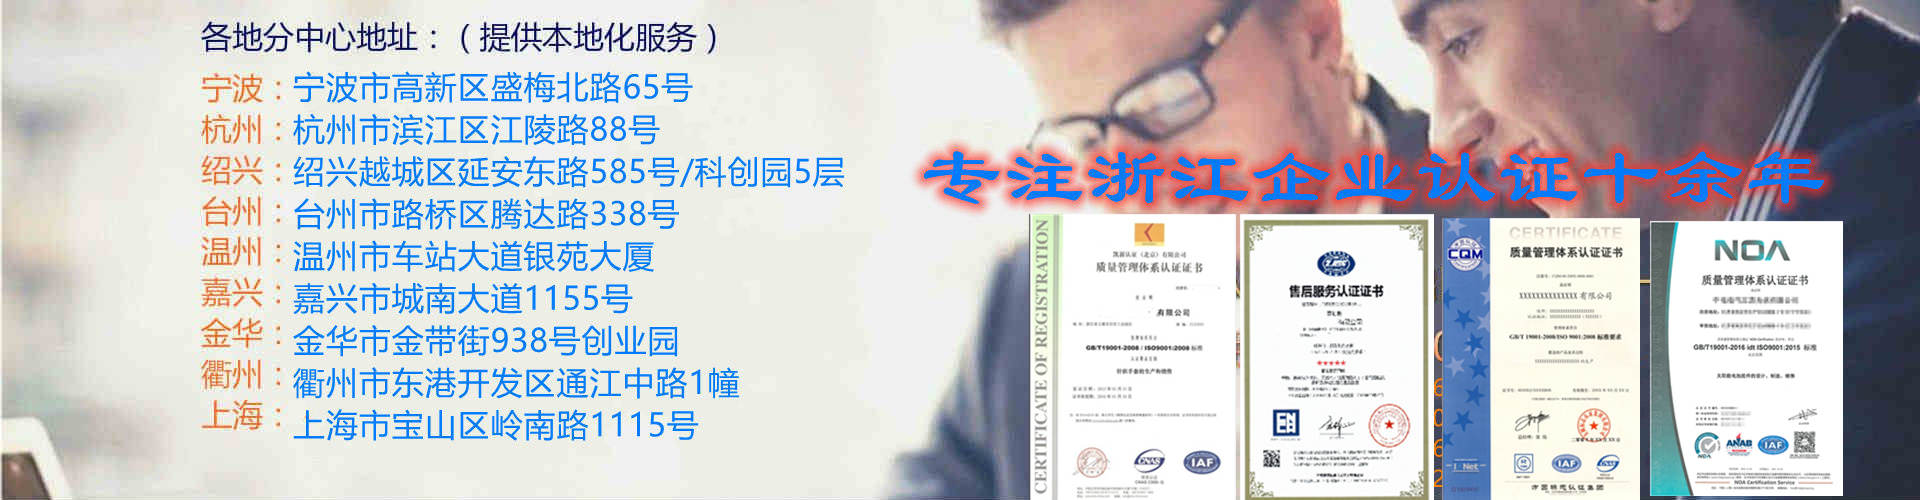 温州永嘉ISO9001认证ISO9000,温州永嘉ISO认证申请条件